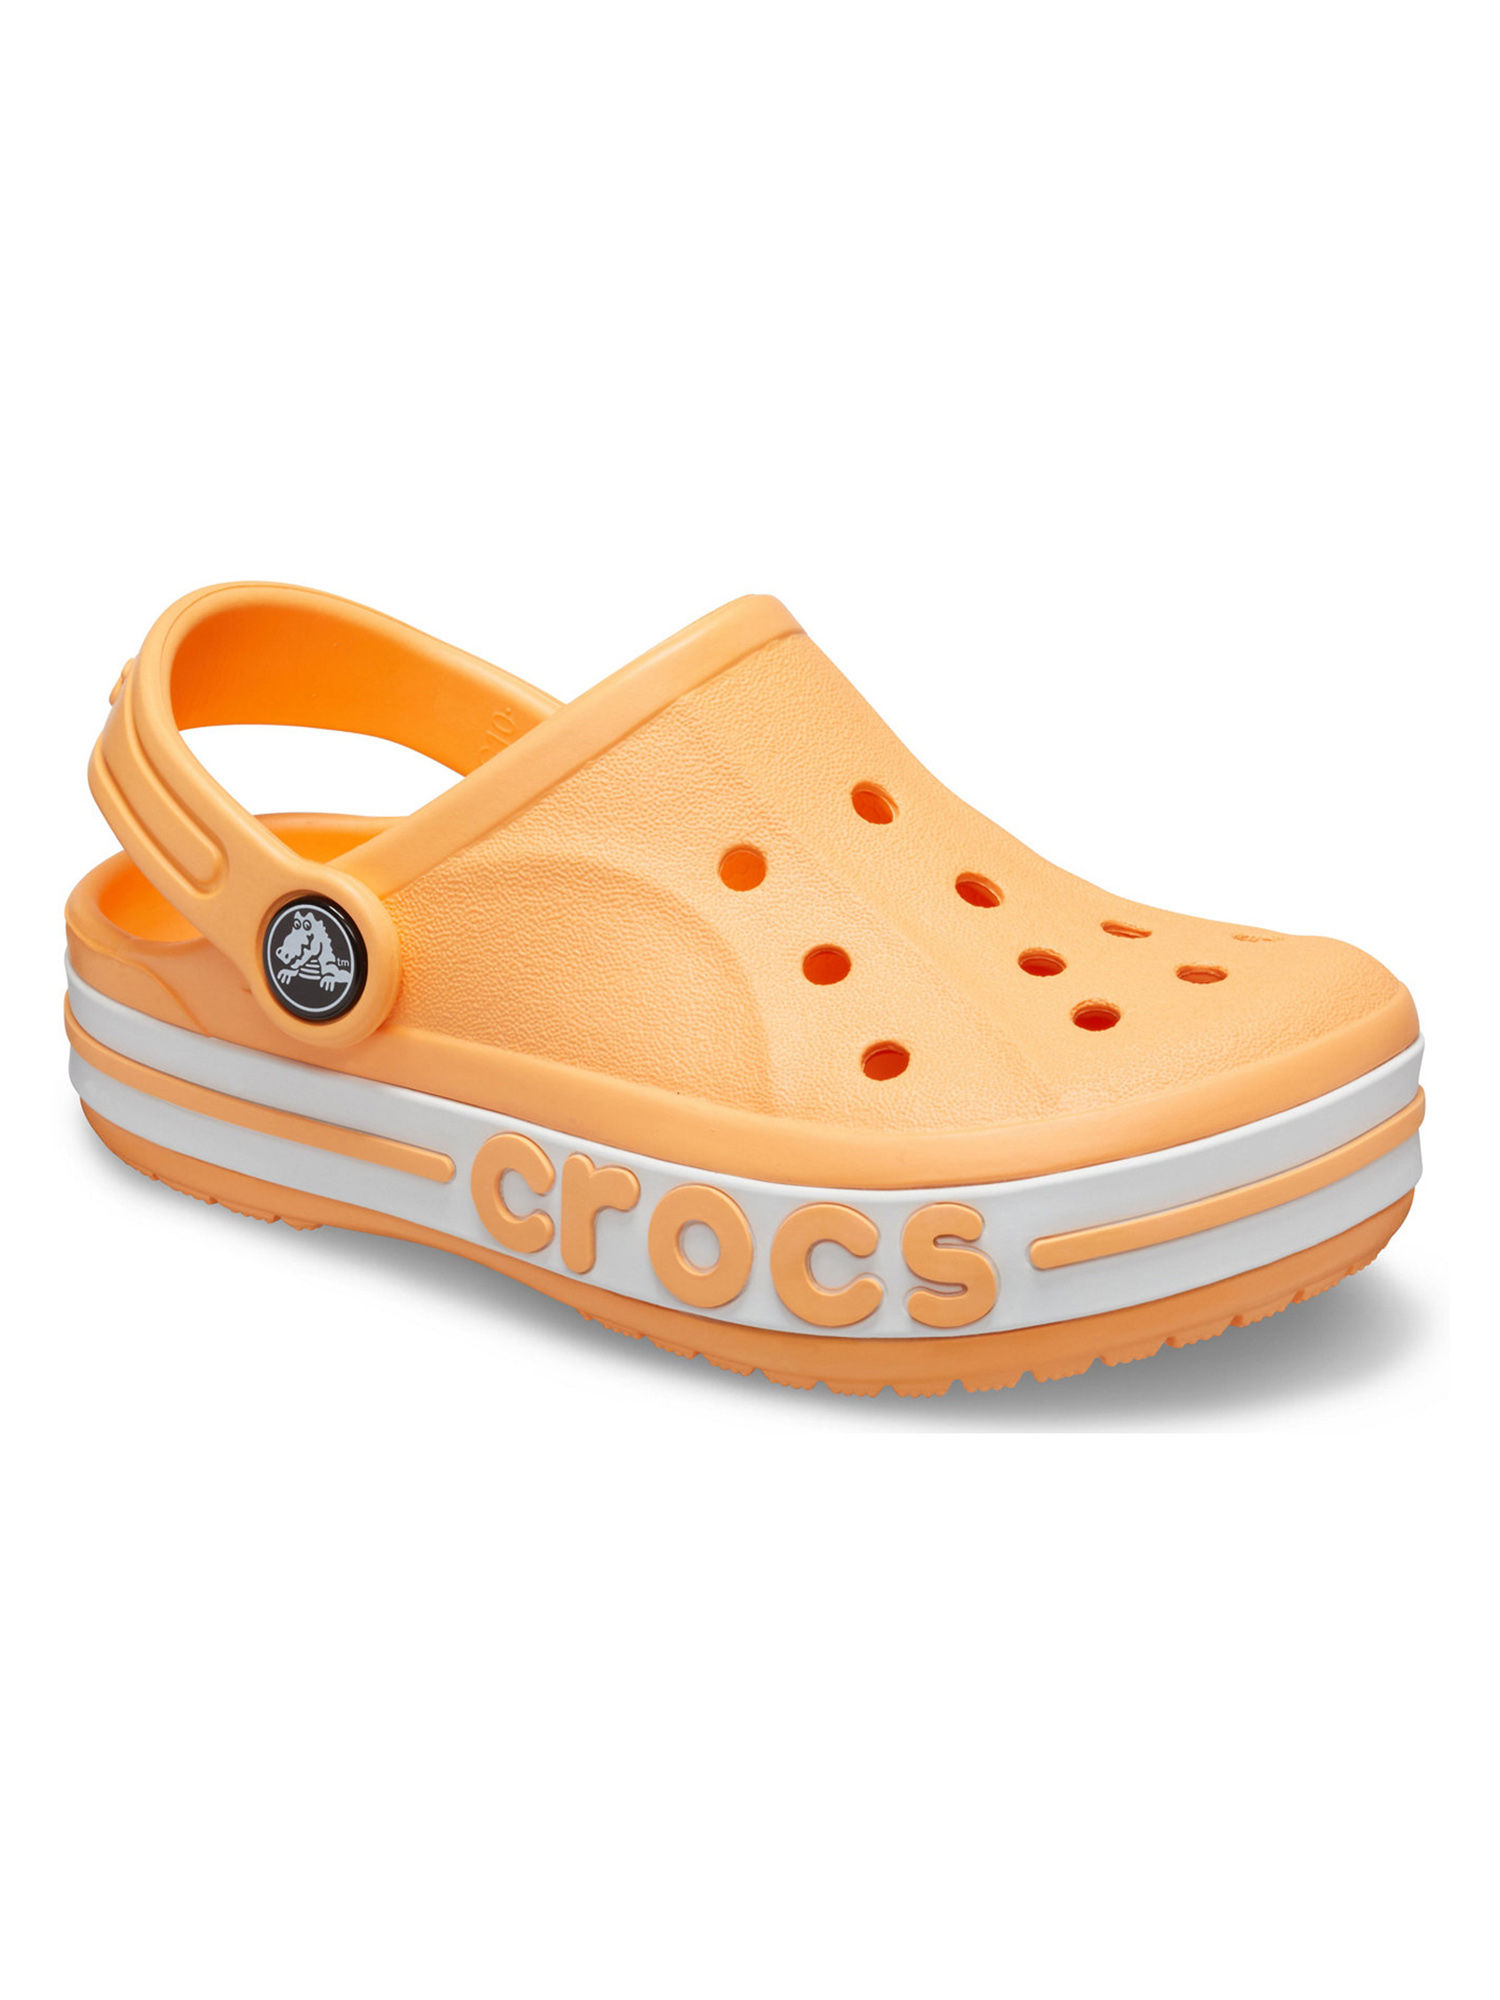 crocs c4